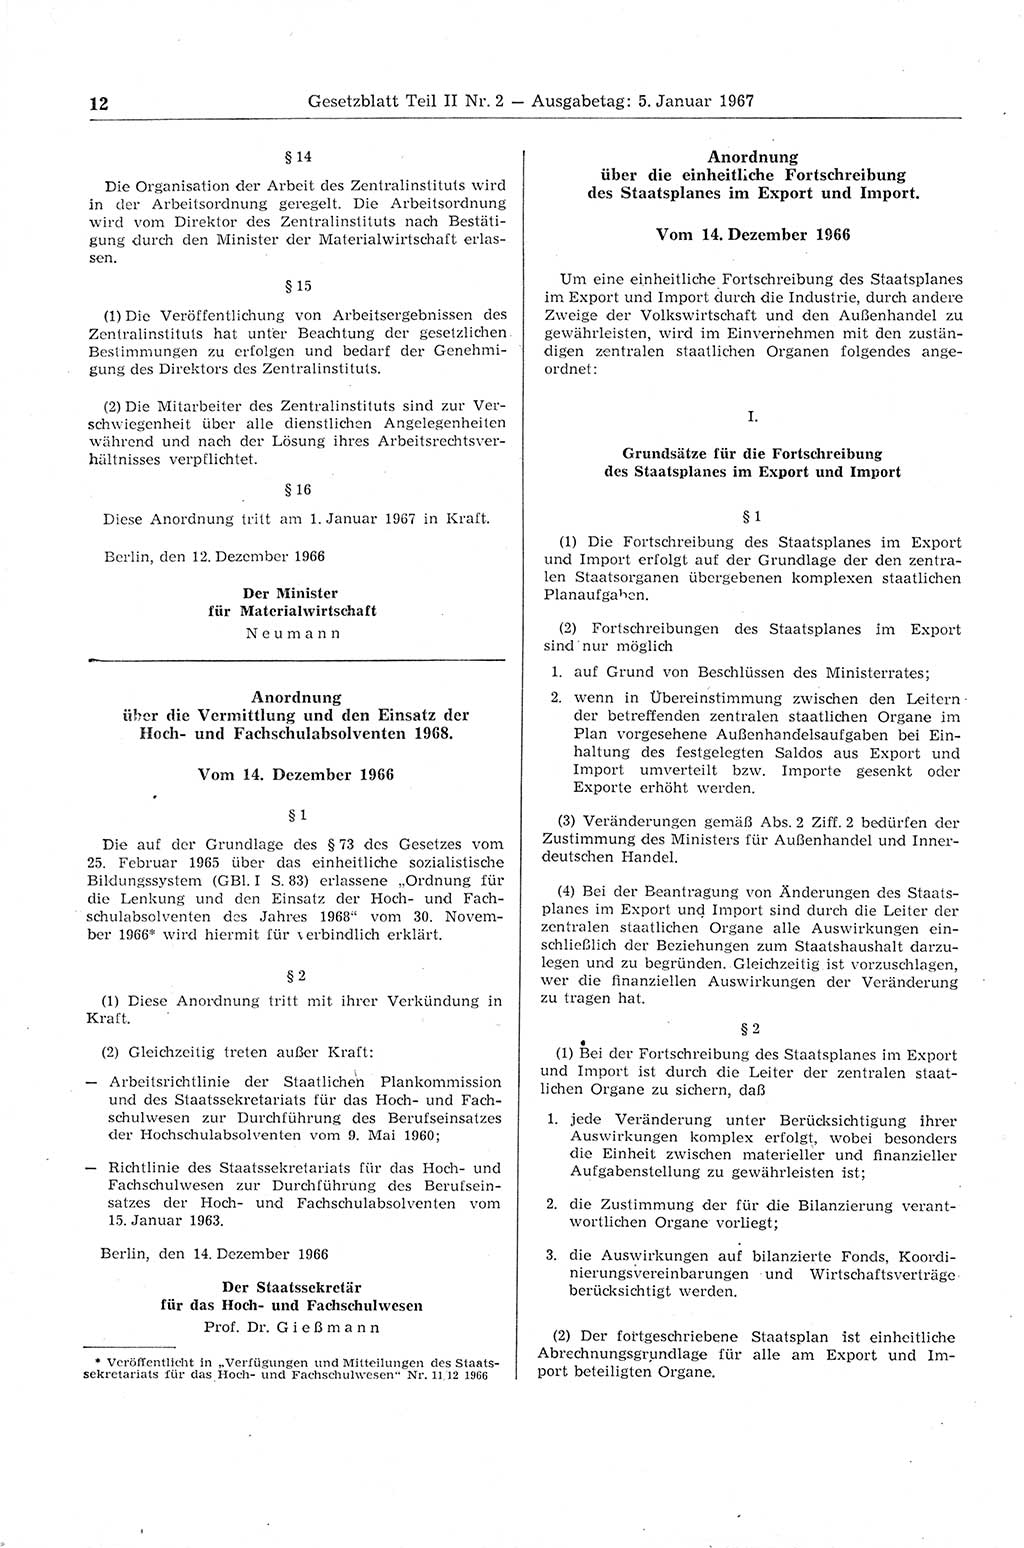 Gesetzblatt (GBl.) der Deutschen Demokratischen Republik (DDR) Teil ⅠⅠ 1967, Seite 12 (GBl. DDR ⅠⅠ 1967, S. 12)